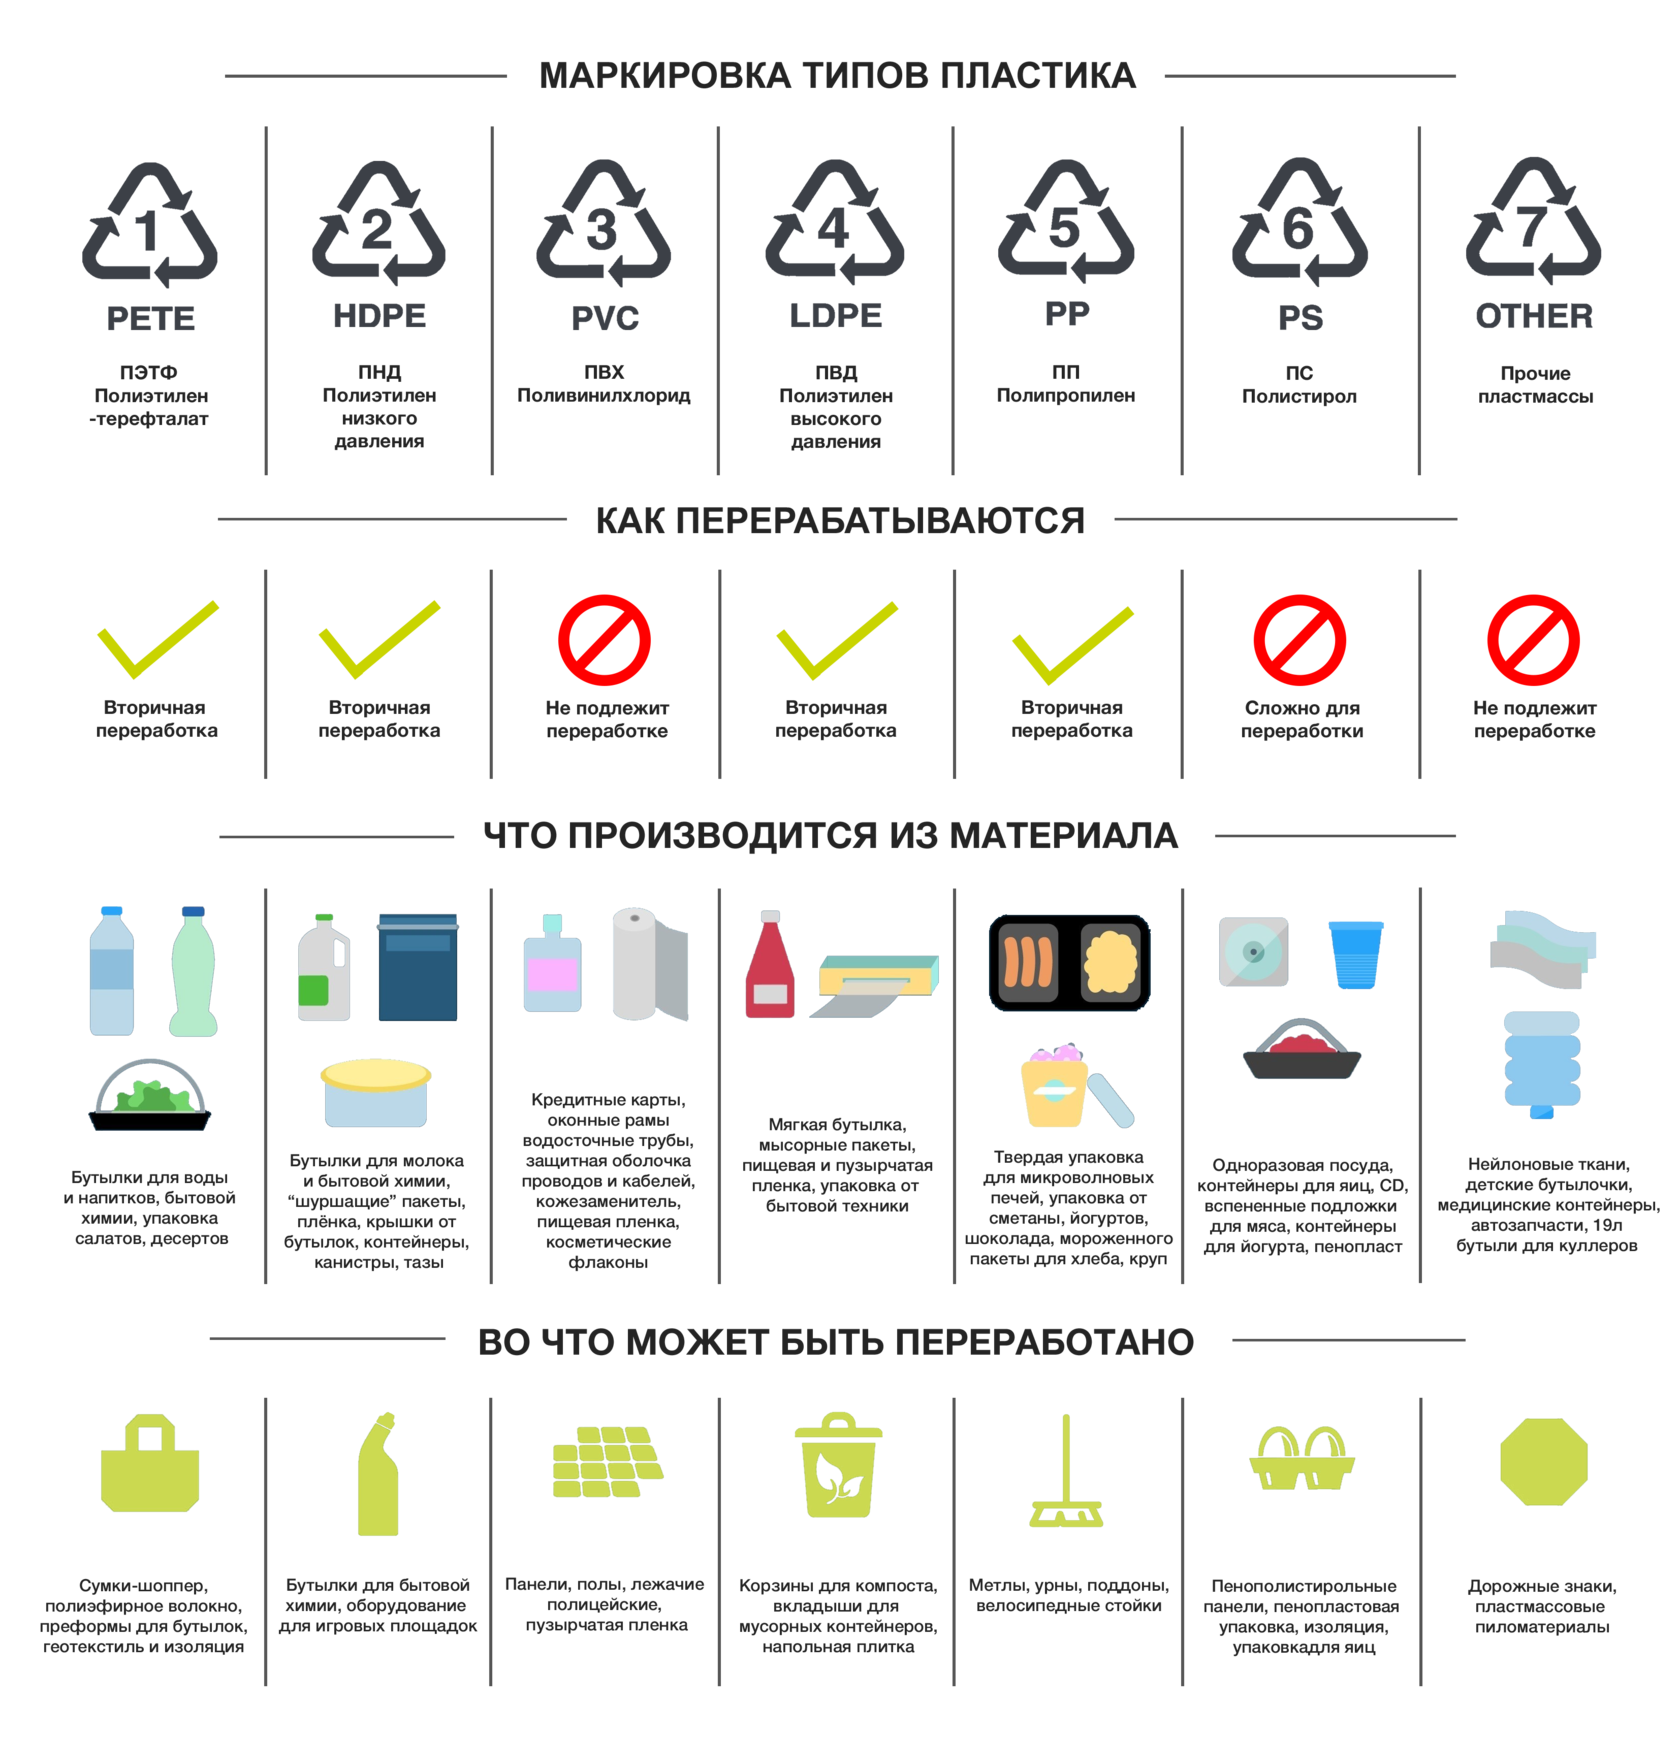 Что означает переработок. Обозначение отходов пластика. Переработка пластика маркировка 5. Коды переработки пластика таблица. Обозначения отходов для переработки.